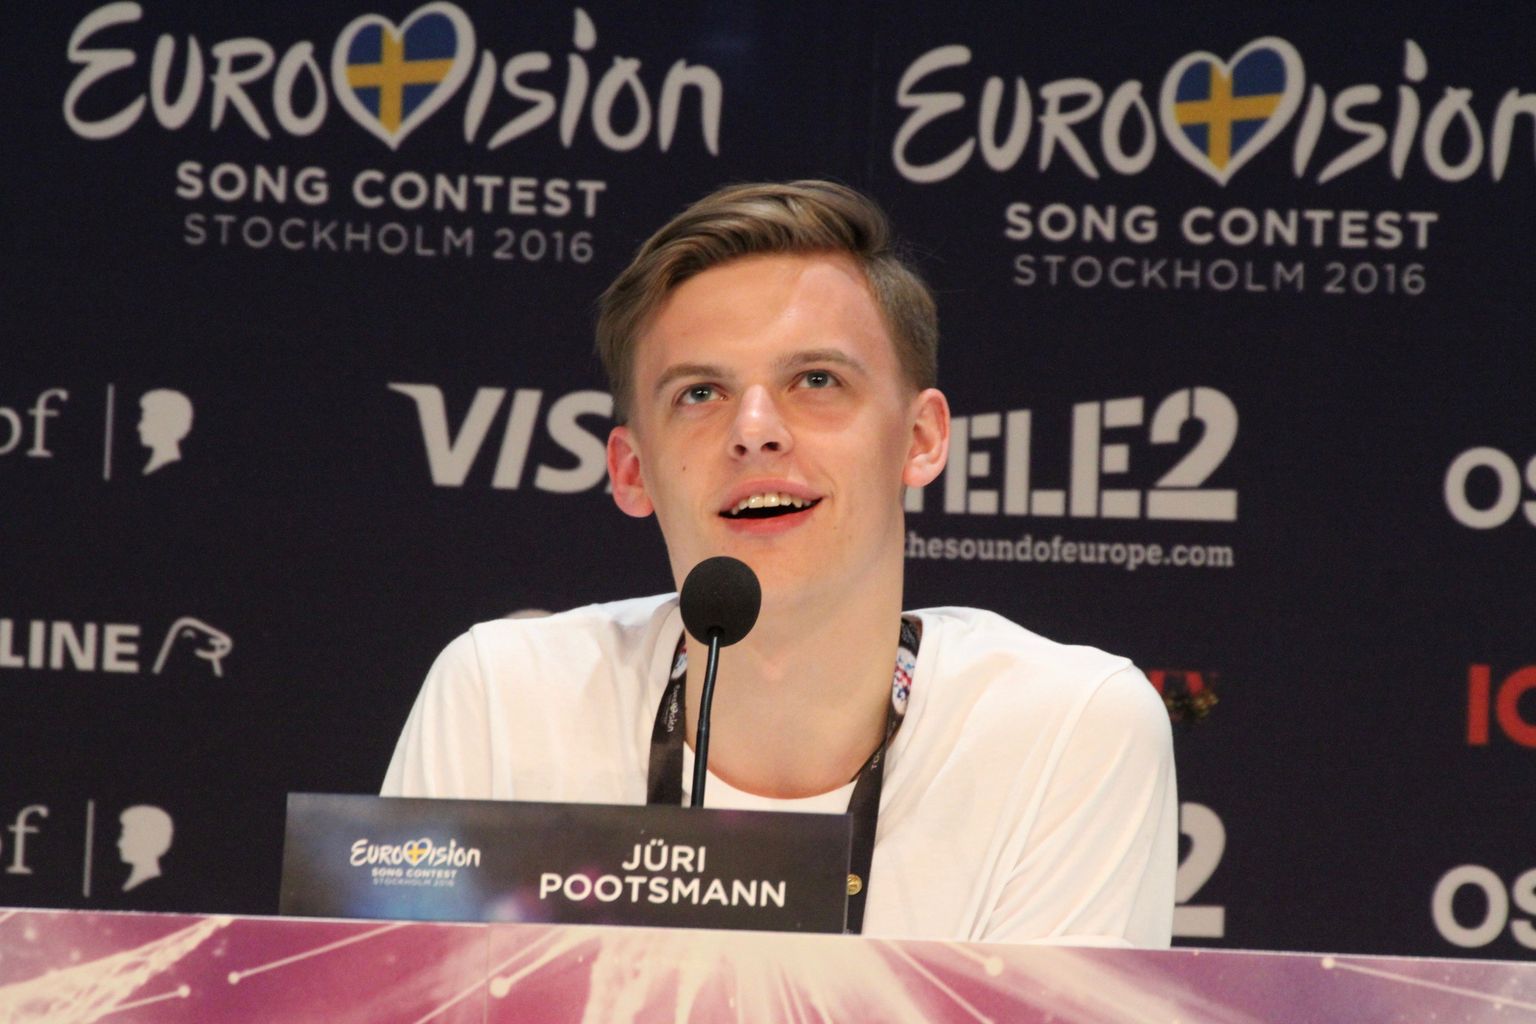 Eurovisiooni fännide seas on Jüri Pootsmann saanud endale uue hüüdnime, milleks on Mr.Bond